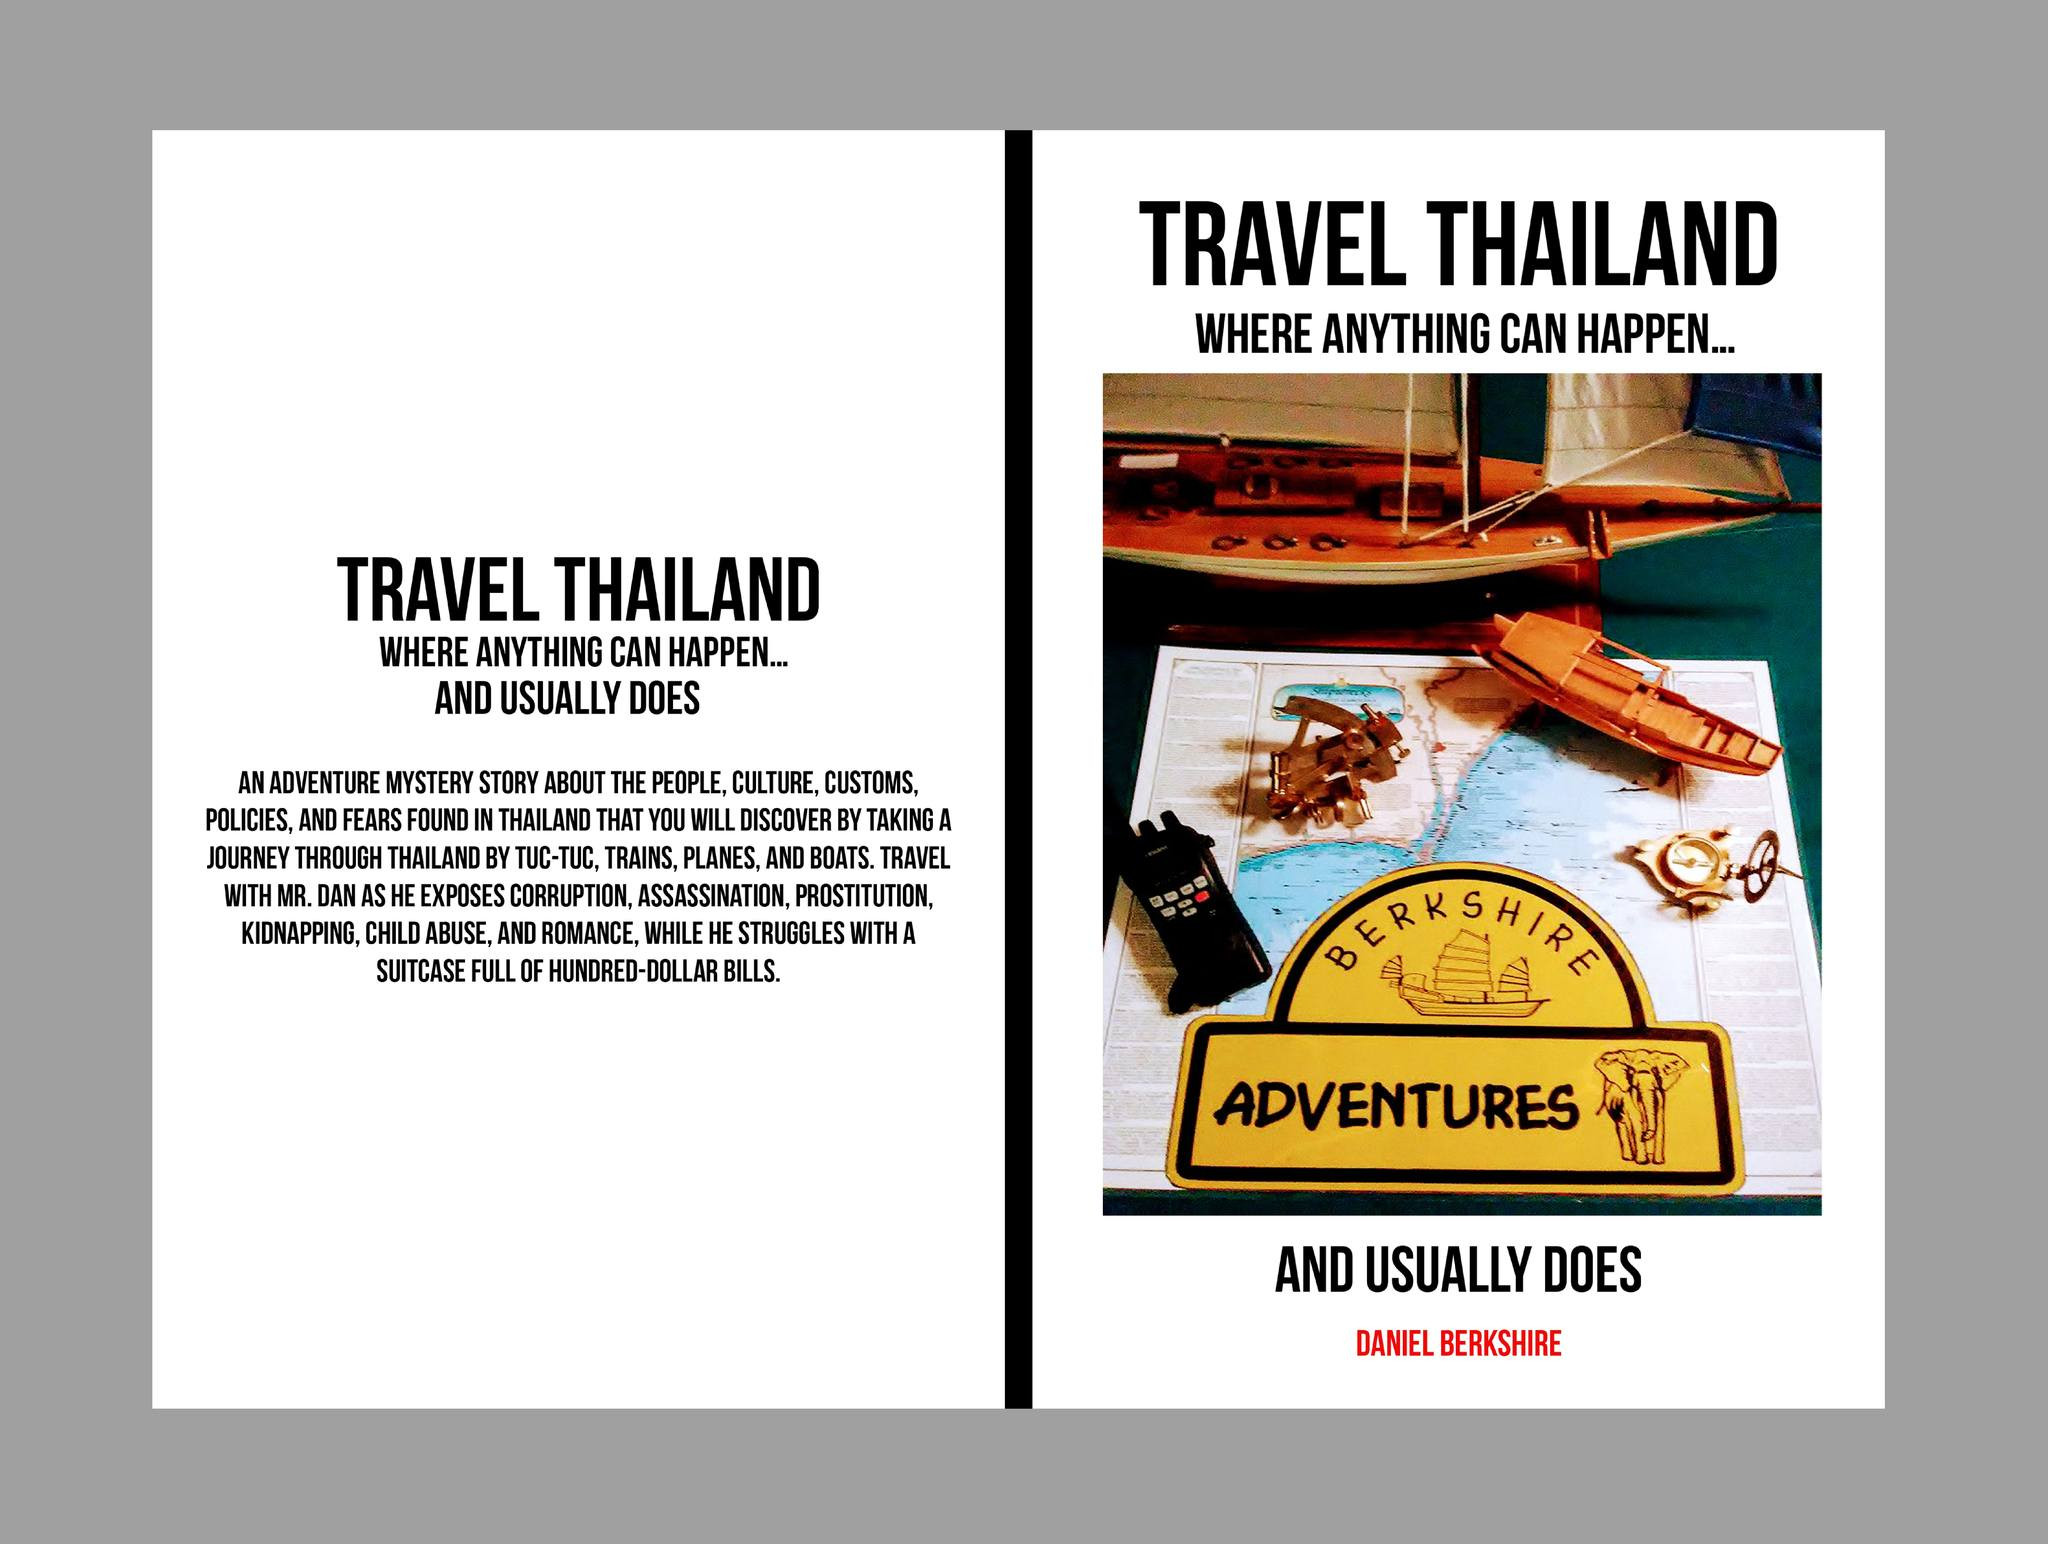 TOUR THAILAND